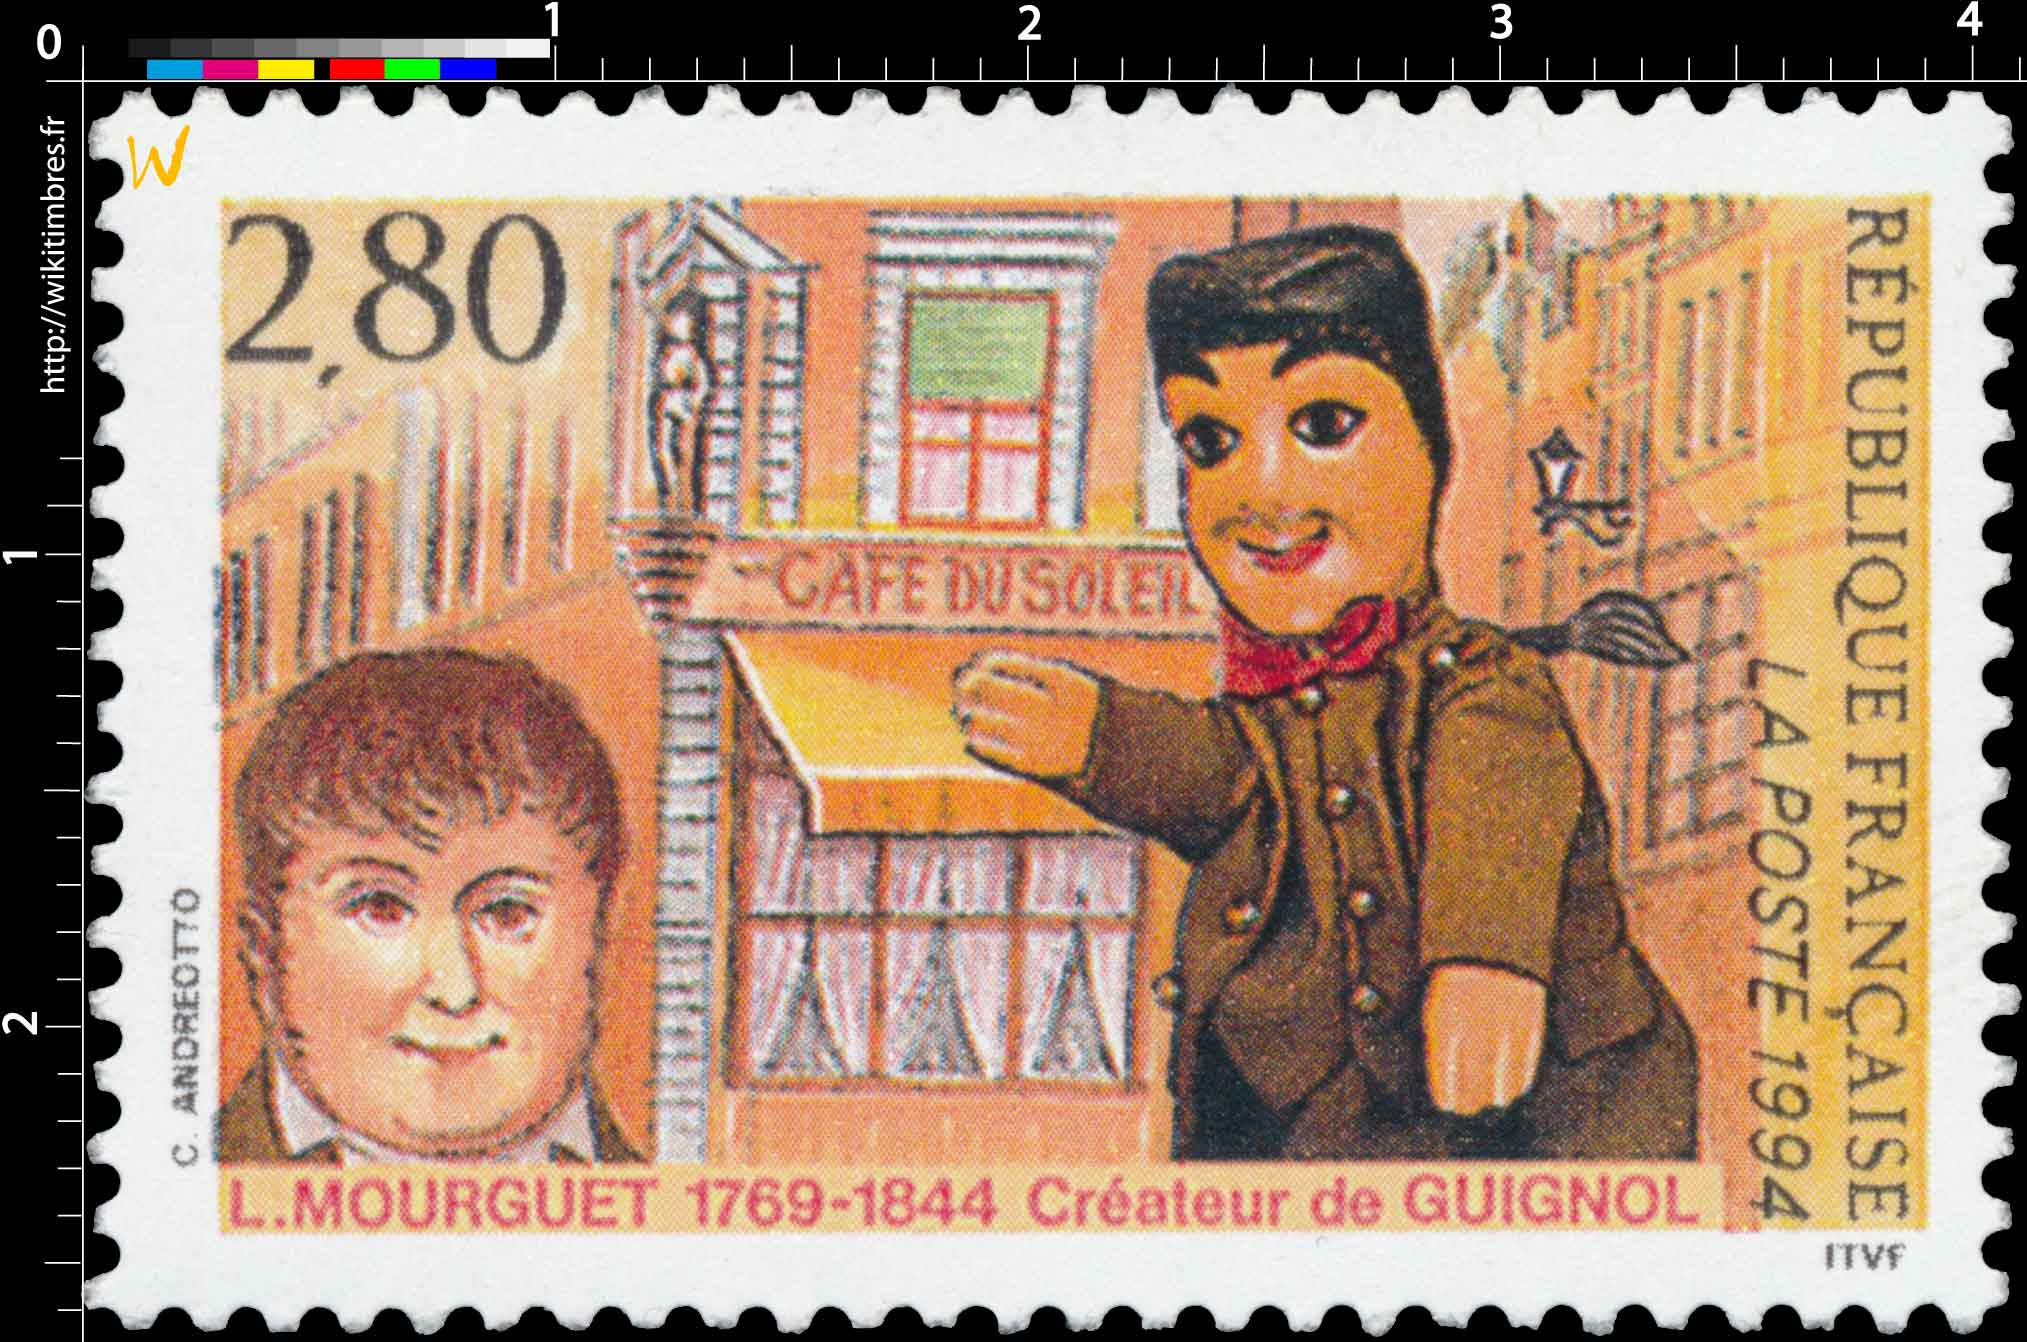 1994 L. MOURGUET 1769-1844 Créateur de GUIGNOL CAFÉ DU SOLEIL